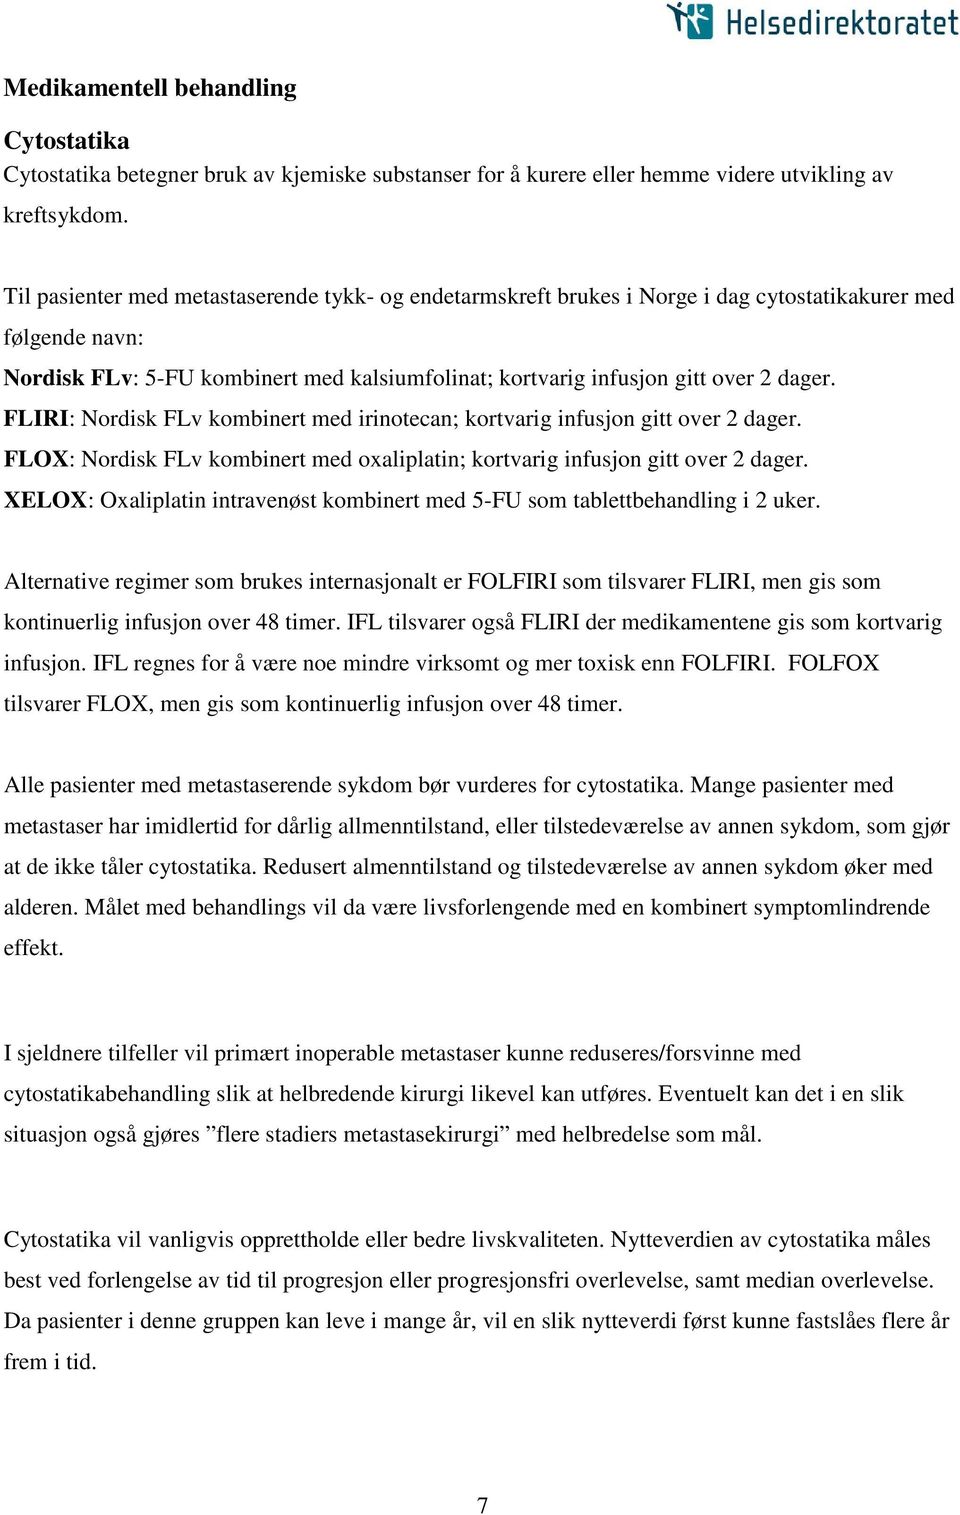 FLIRI: Nordisk FLv kombinert med irinotecan; kortvarig infusjon gitt over 2 dager. FLOX: Nordisk FLv kombinert med oxaliplatin; kortvarig infusjon gitt over 2 dager.